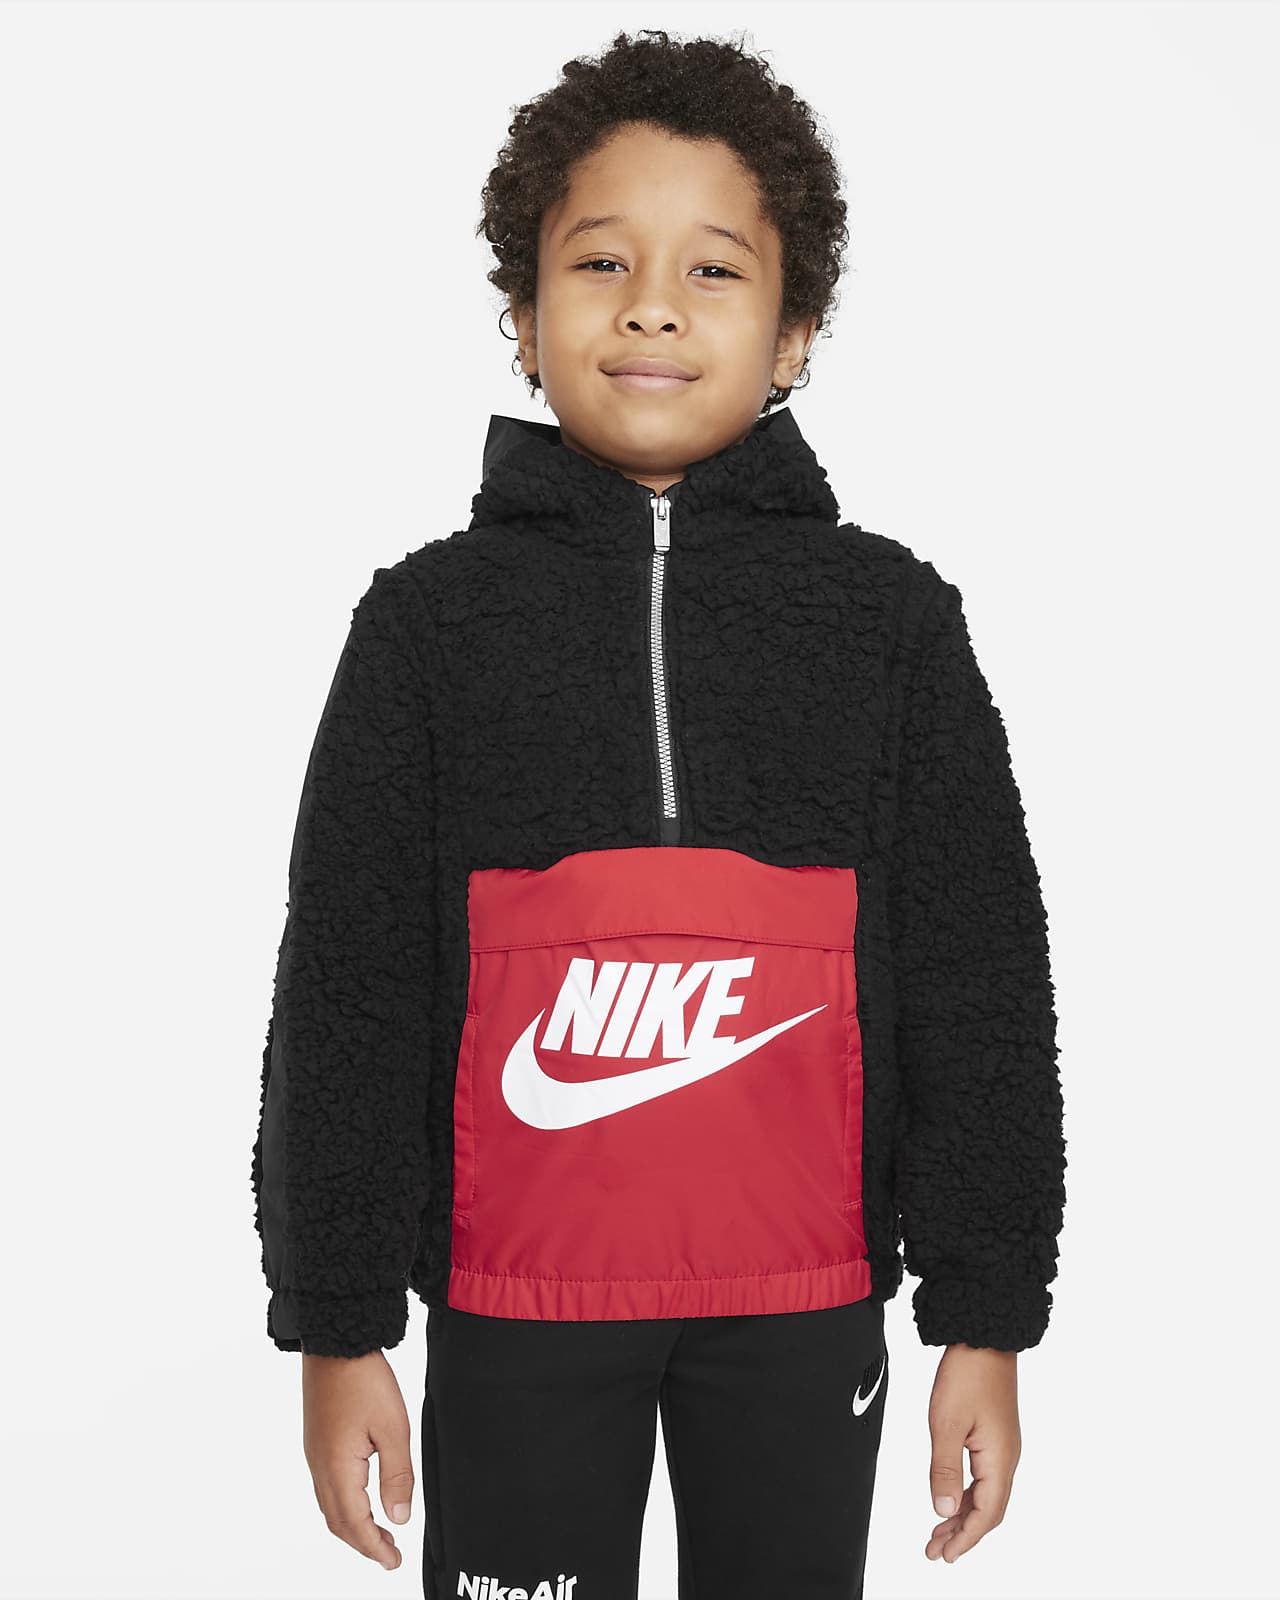 Sudadera con gorro medio cierre niño talla pequeña Sportswear. Nike.com